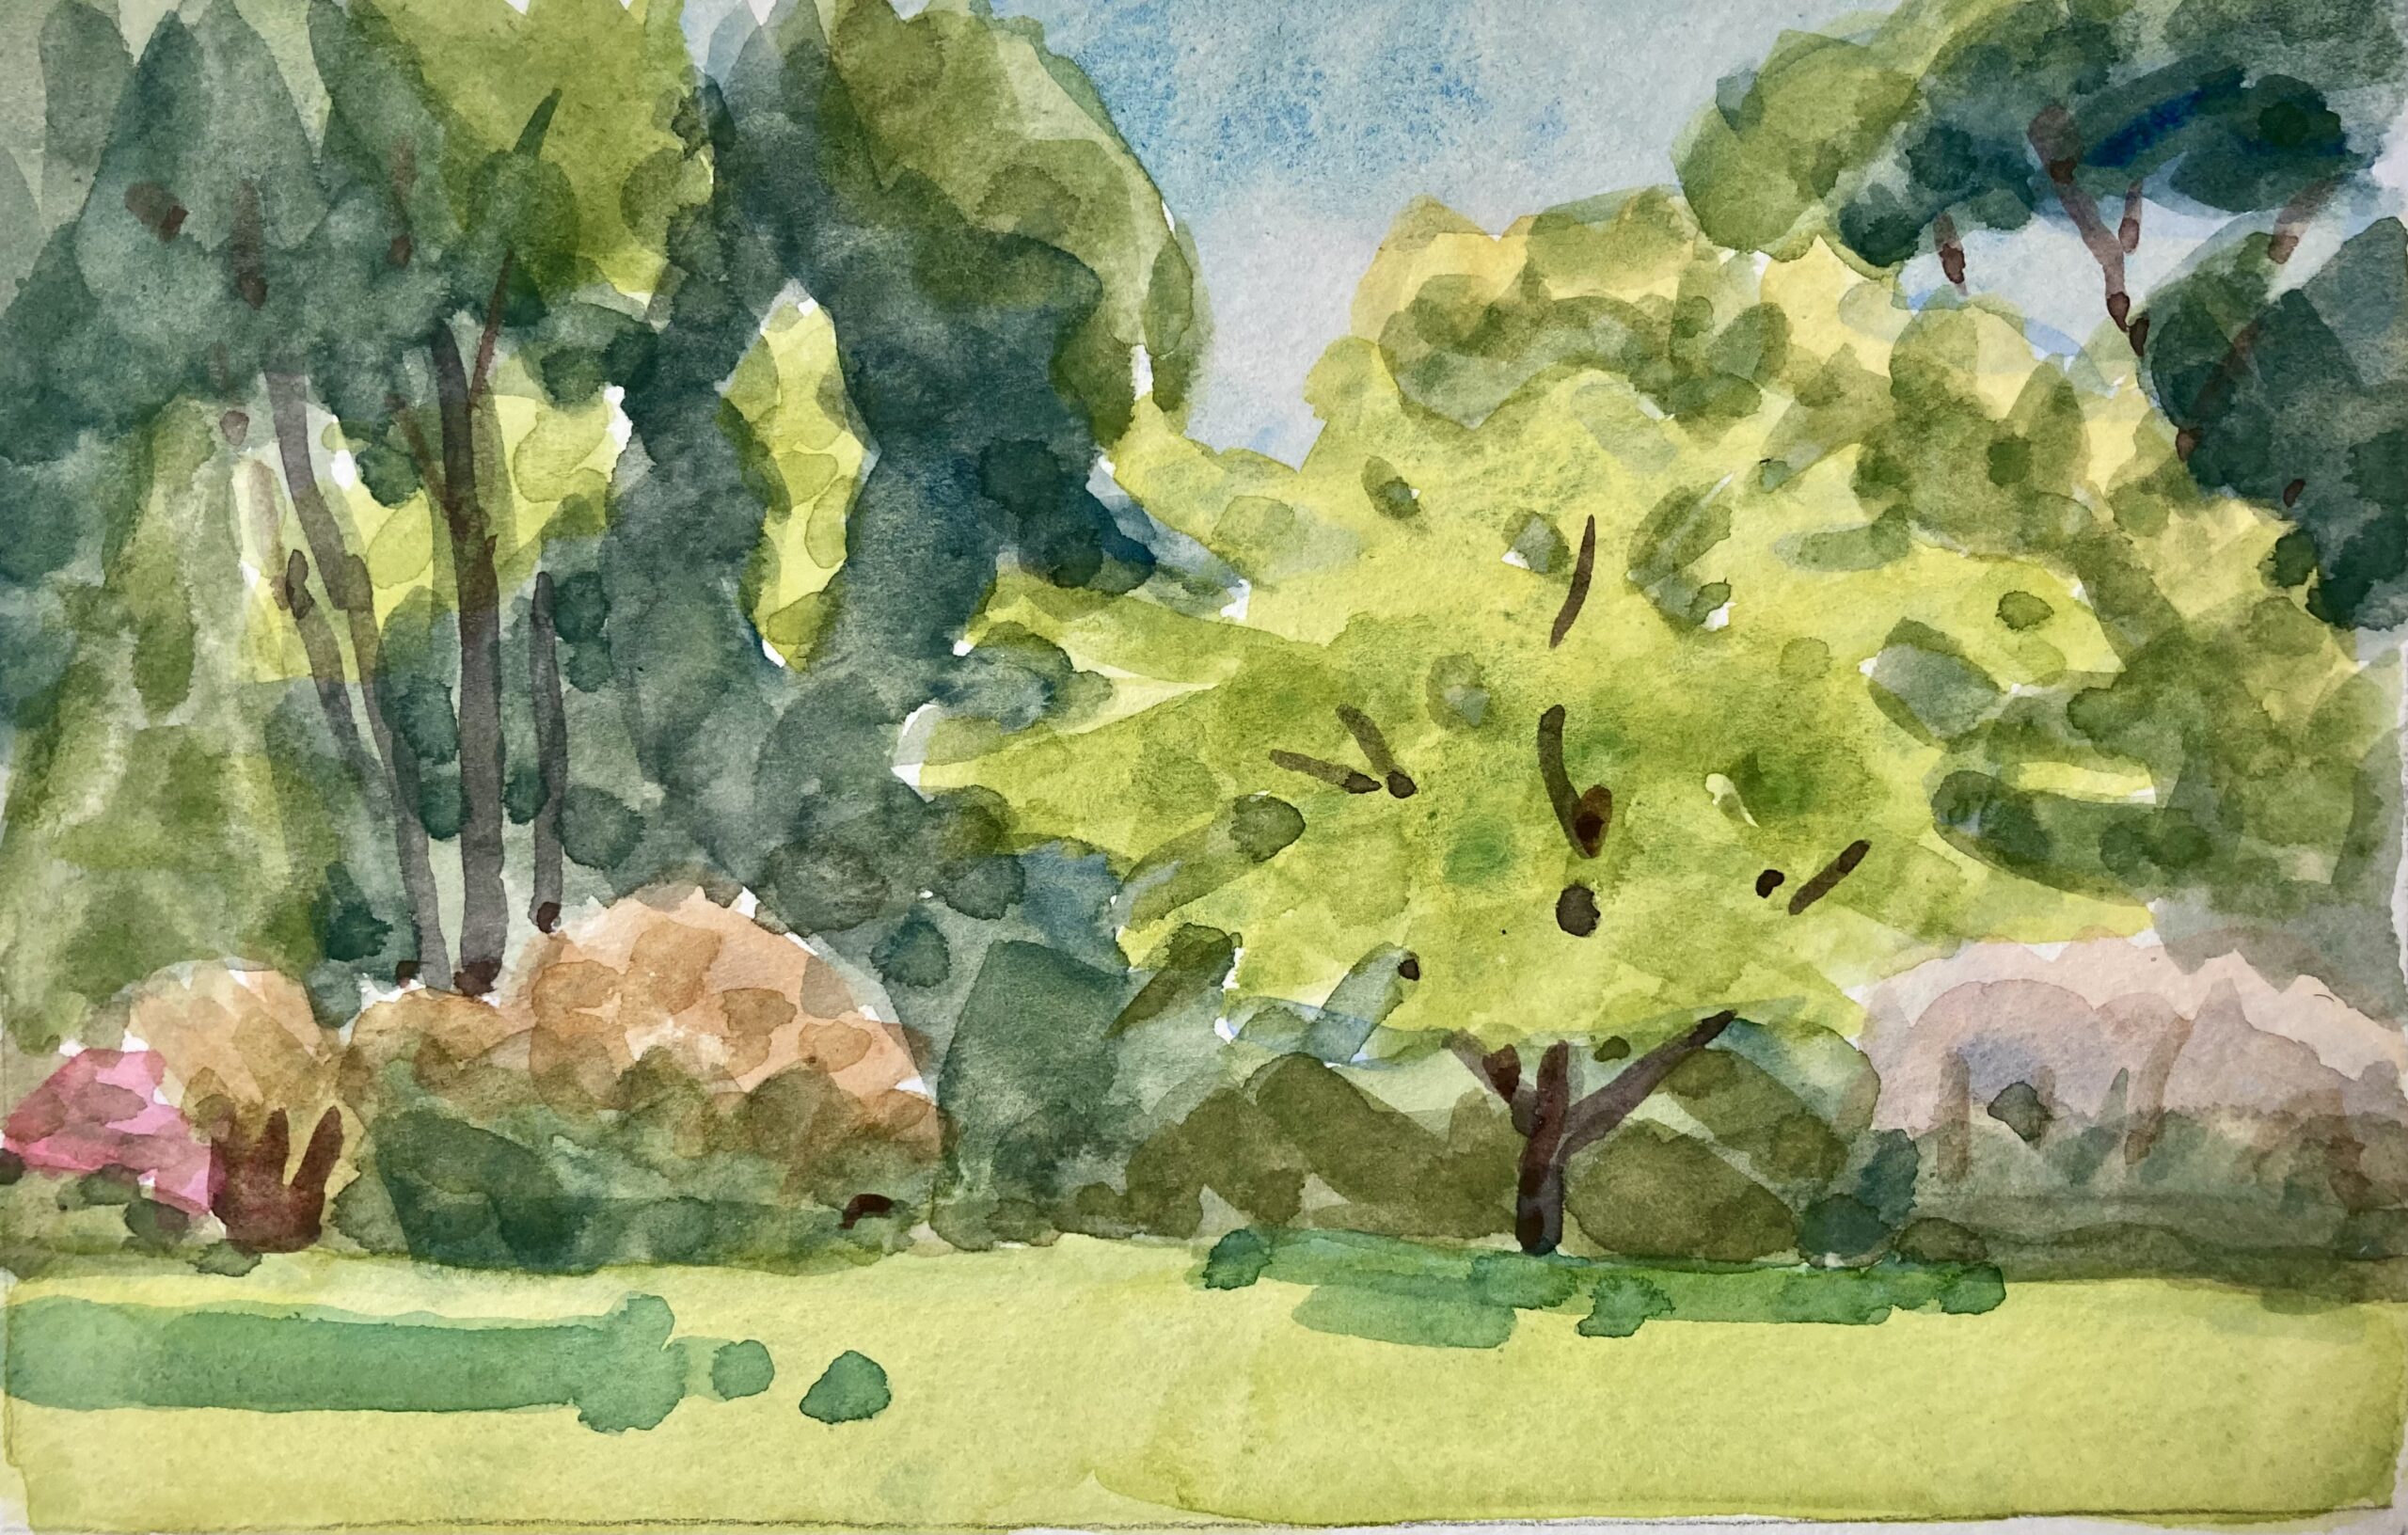 Watercolor en Plein Air (Outside on Location)